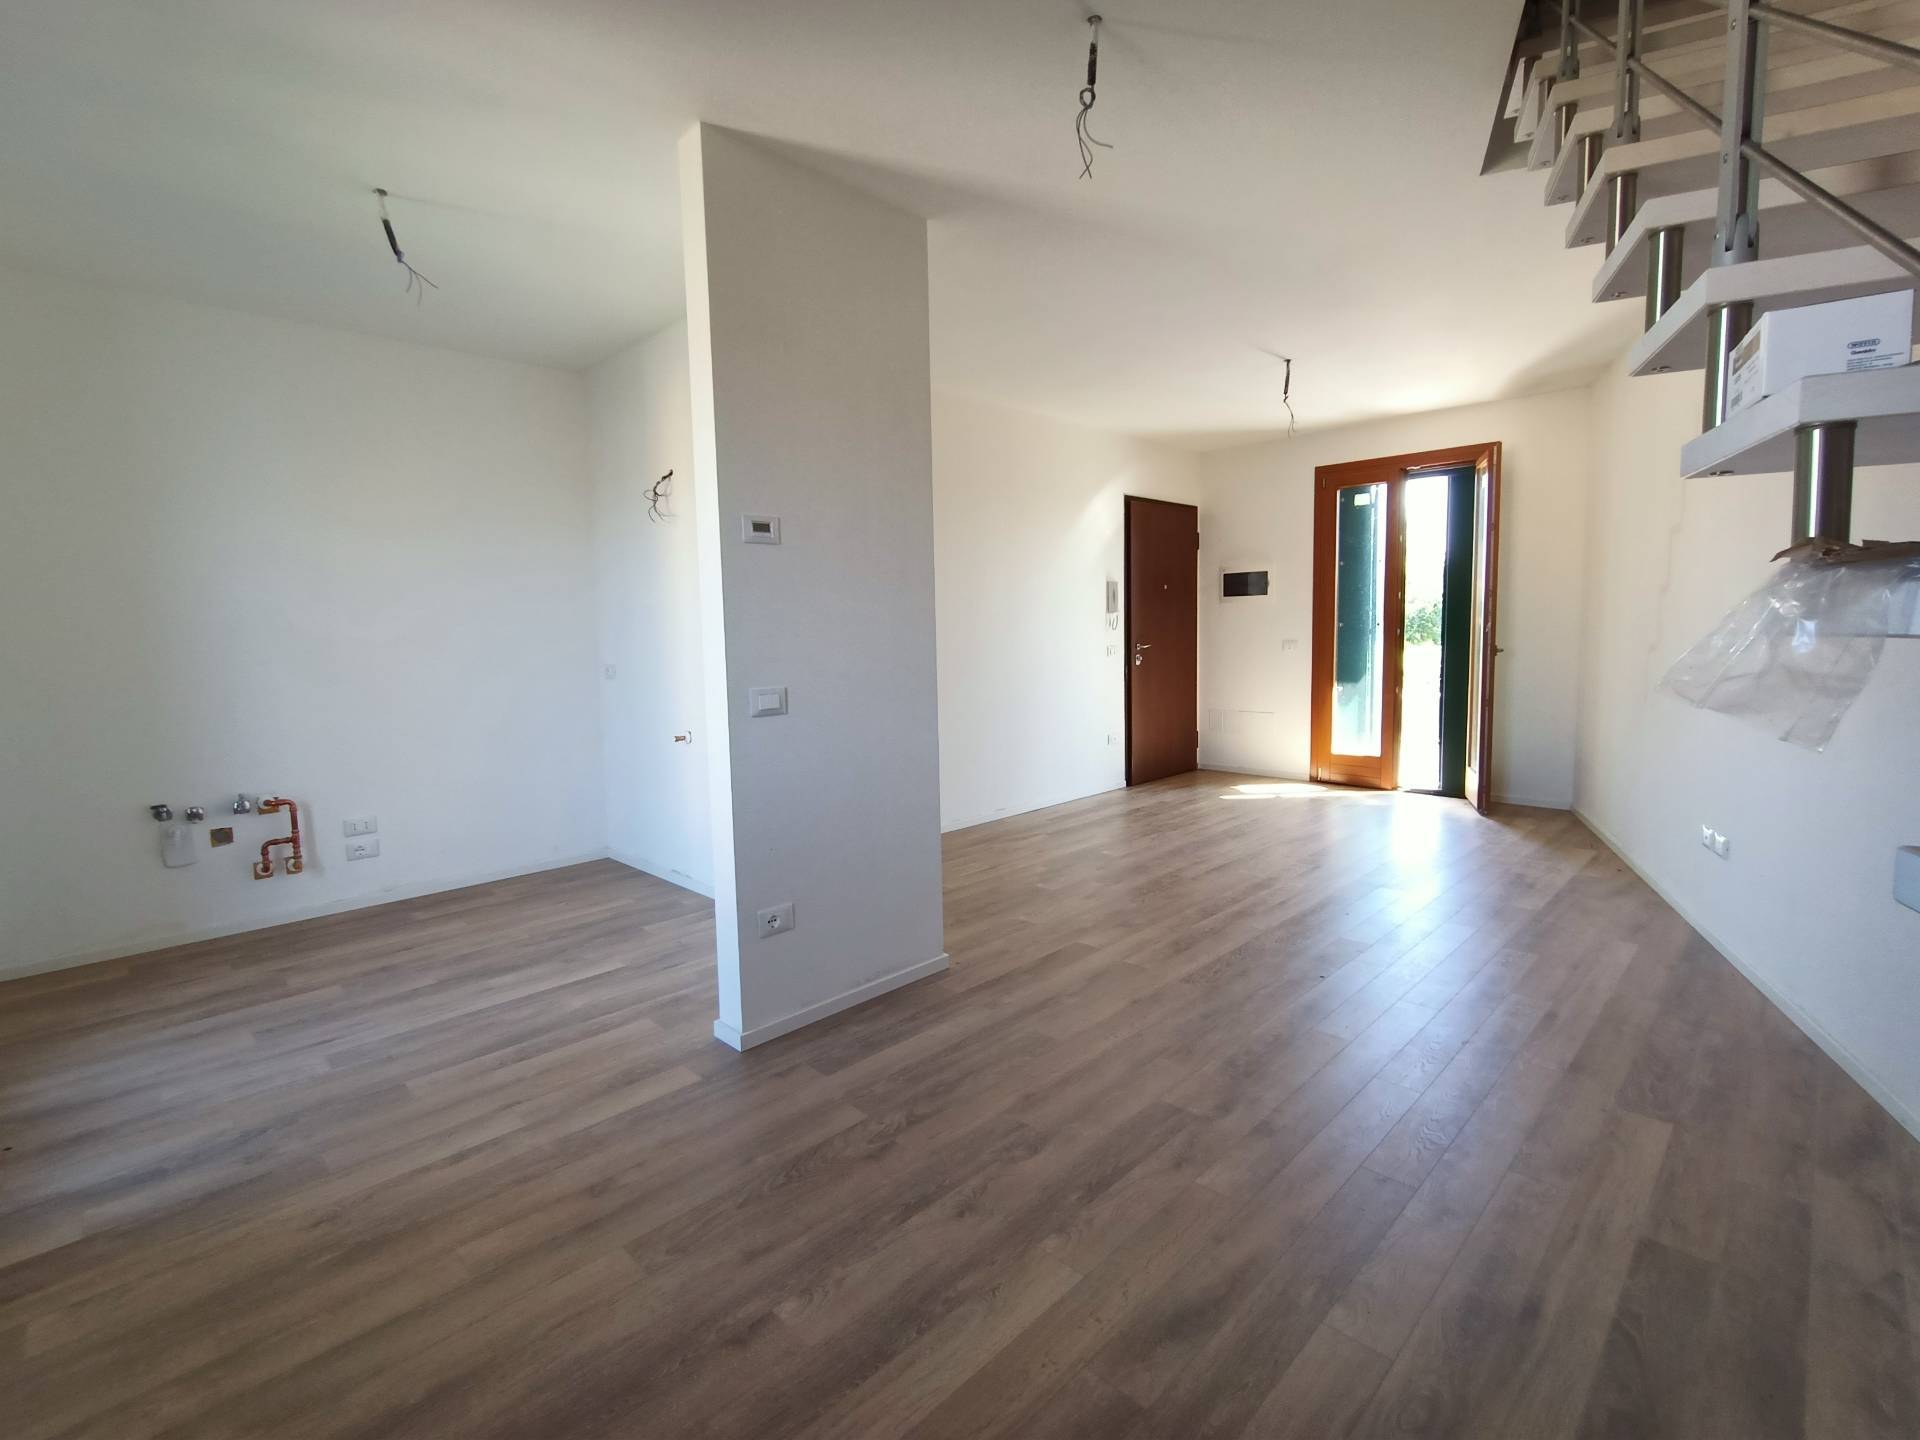 Appartamento in vendita a Mortegliano, 4 locali, prezzo € 119.000 | PortaleAgenzieImmobiliari.it